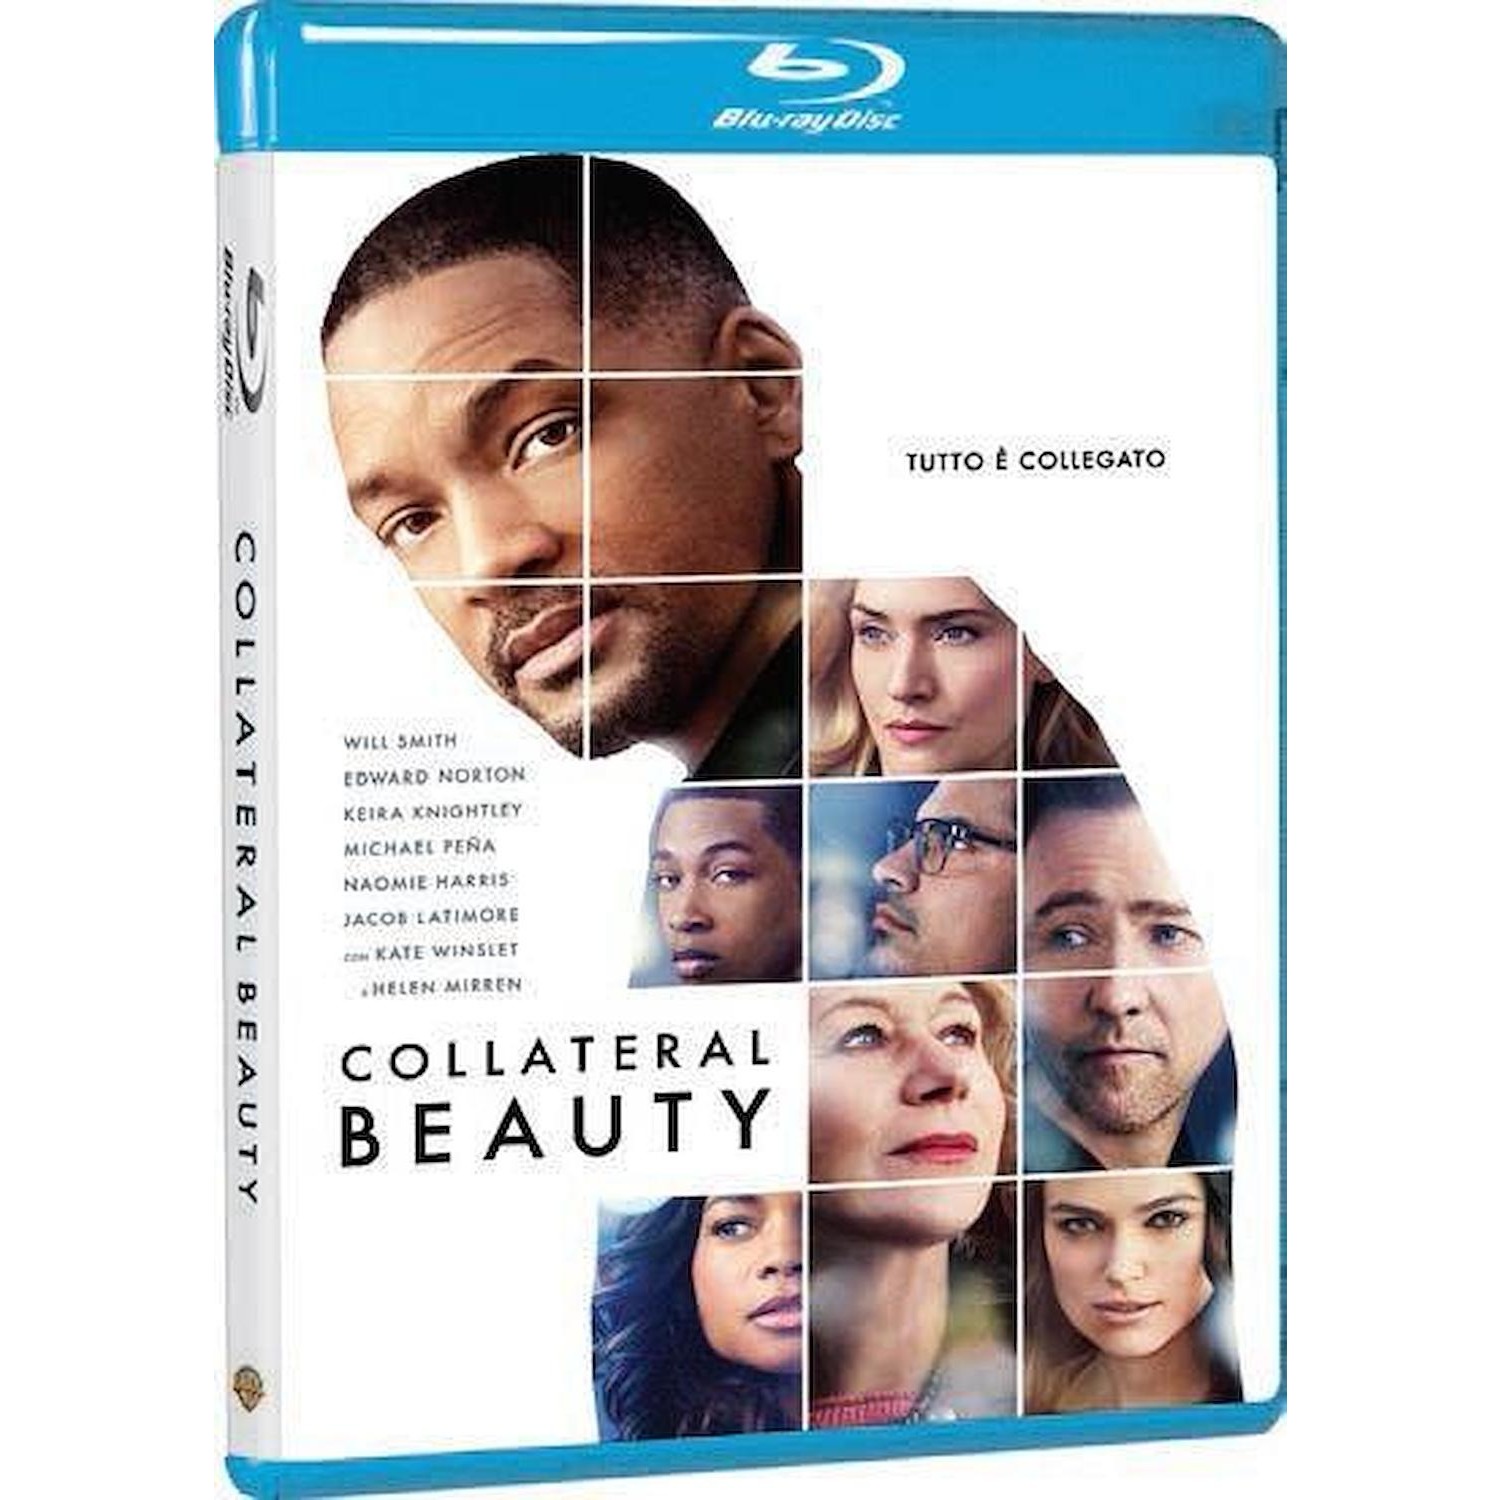 Immagine per Blu-ray Collateral beauty da DIMOStore